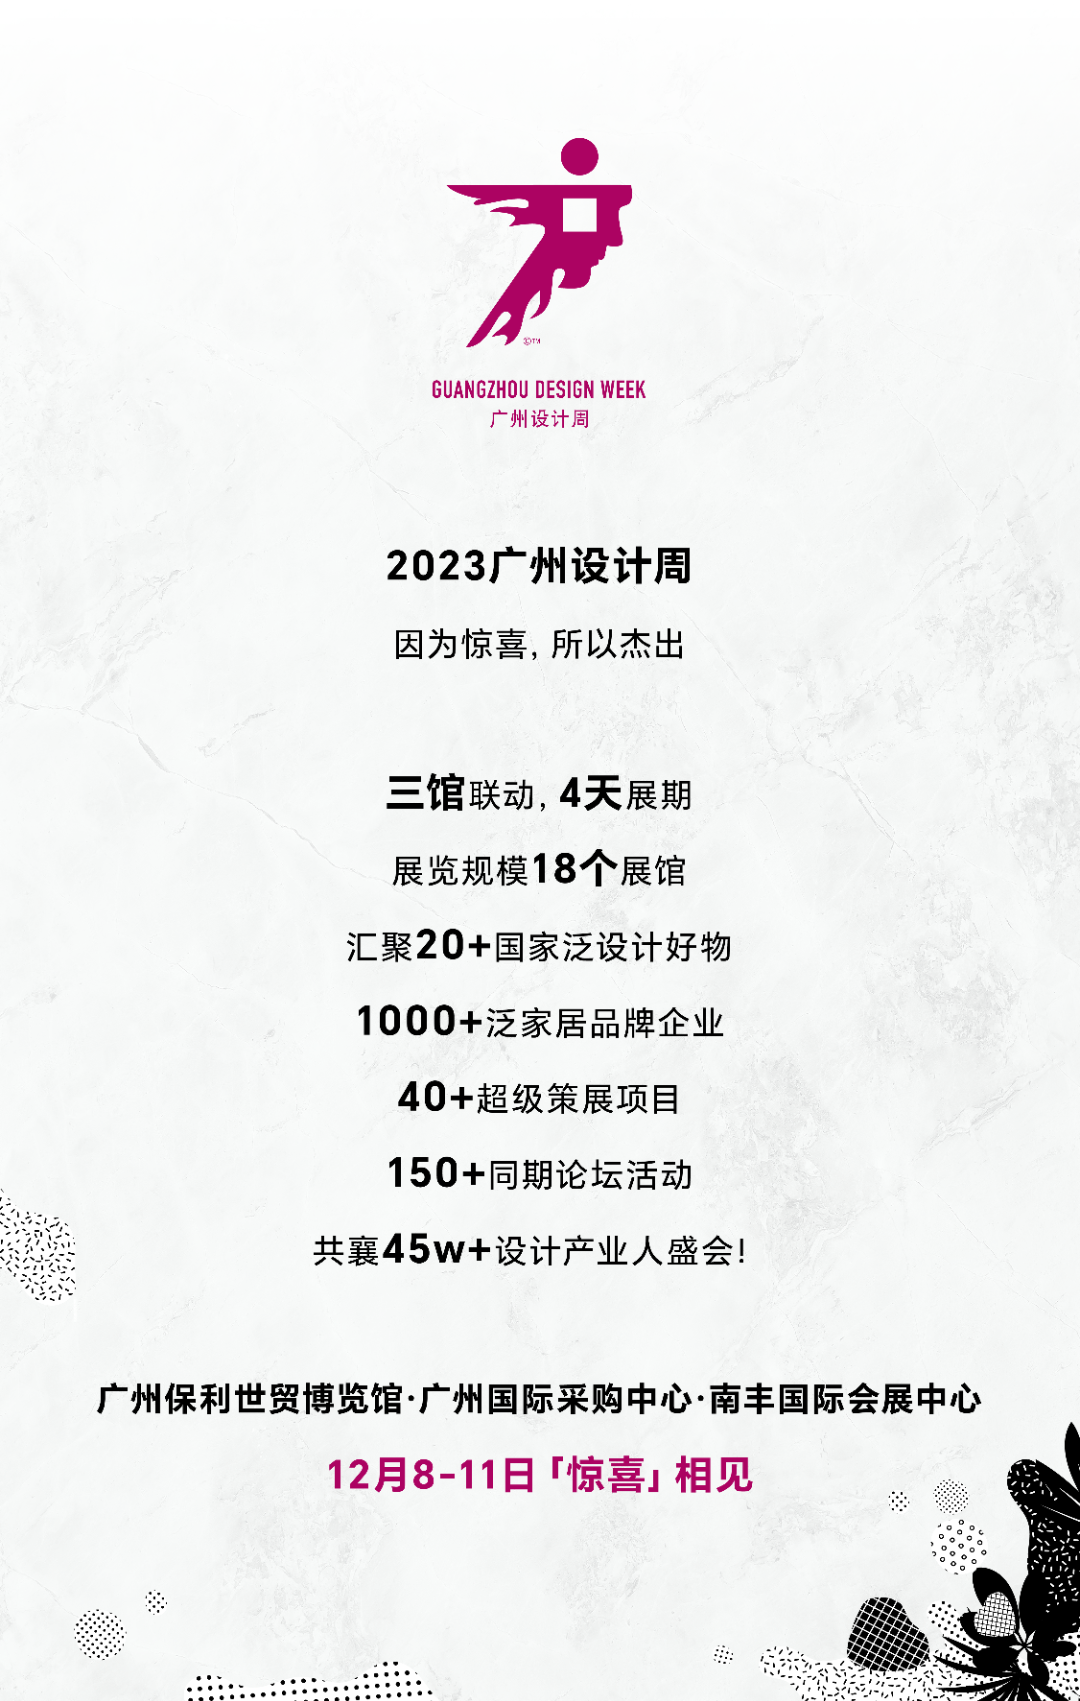 惊喜 X 开幕 | 美好人居、美好生活，2023广州设计周“惊喜”开幕！(图58)